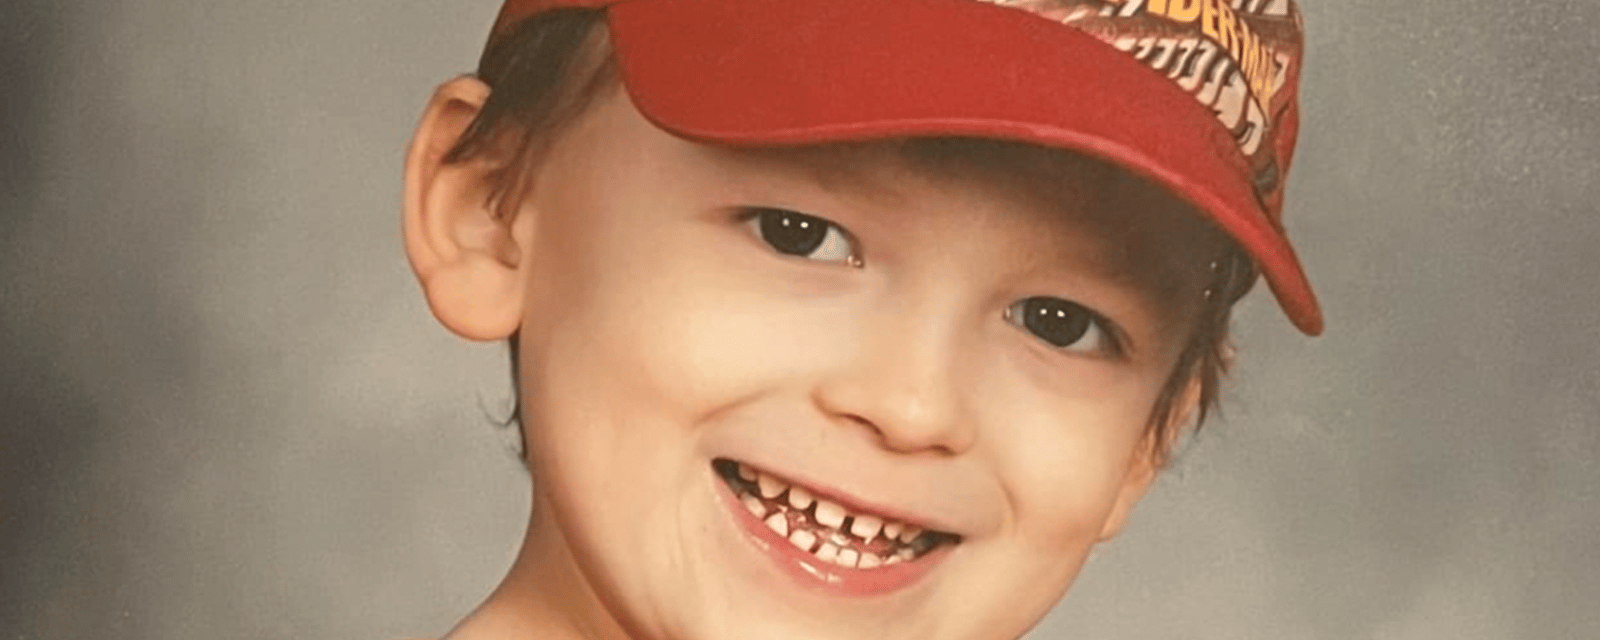 Un jeune garçon de 6 ans perd la vie dans des circonstances terribles